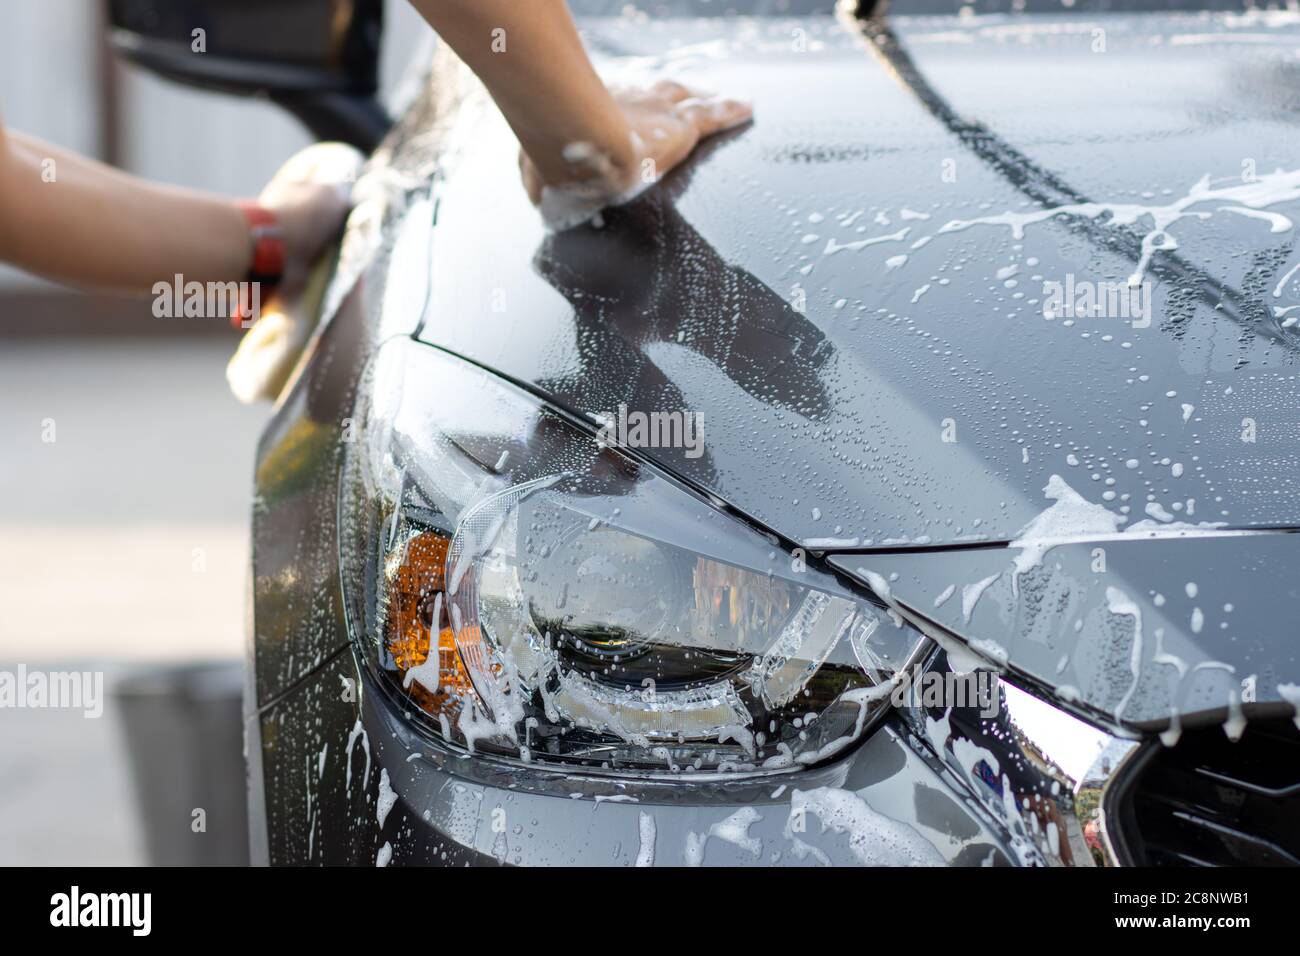 Laver la voiture à la main à l'eau savonneuse. L'homme nettoie la voiture avec une éponge, de l'eau et du détergent. Banque D'Images